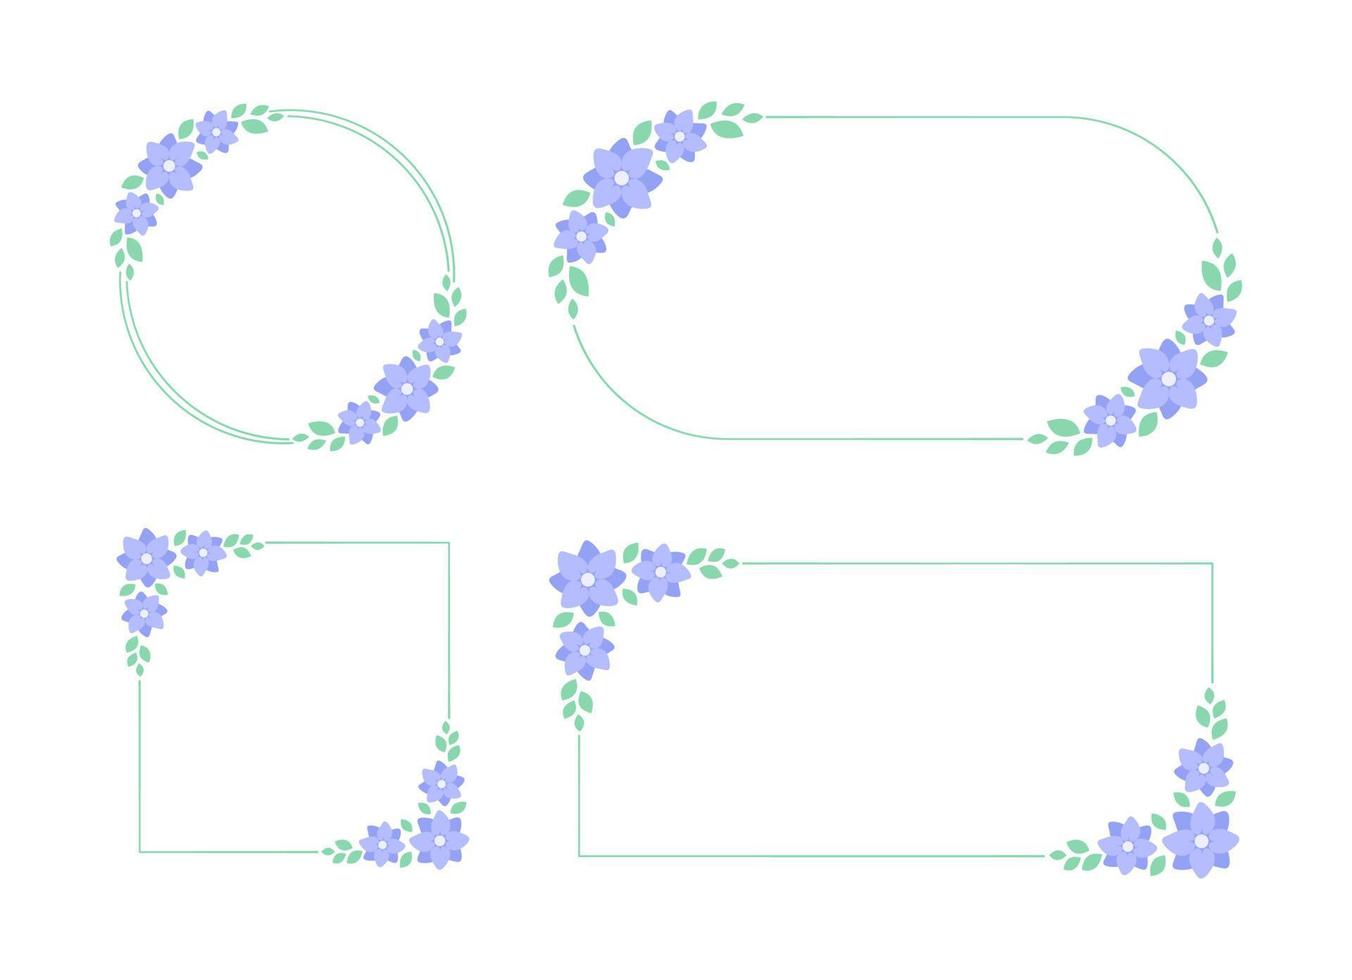 Pastel lavender floral frame set. Botanical flower border vector illustration. Simple elegant romantic style for wedding events, signs, logo, labels, social media posts, etc.